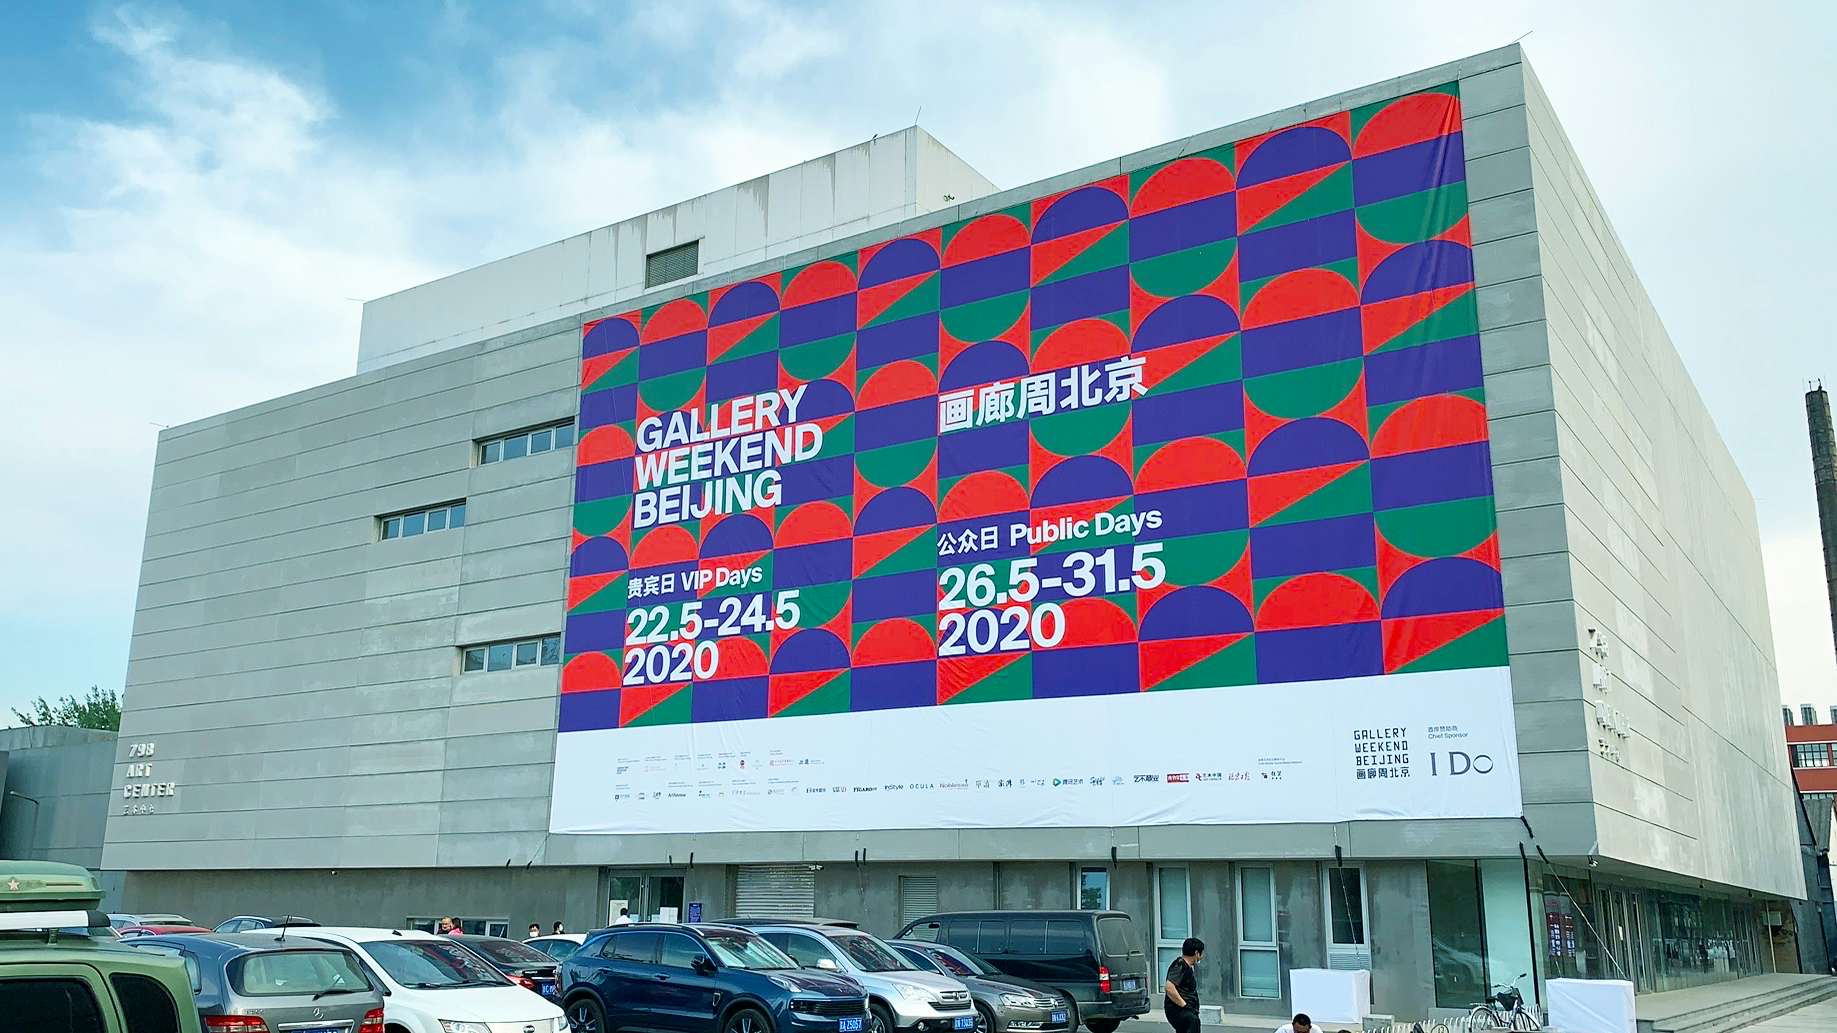 Gallery Weekend Beijing 2020」が開幕。コロナ時代のアートイベントを